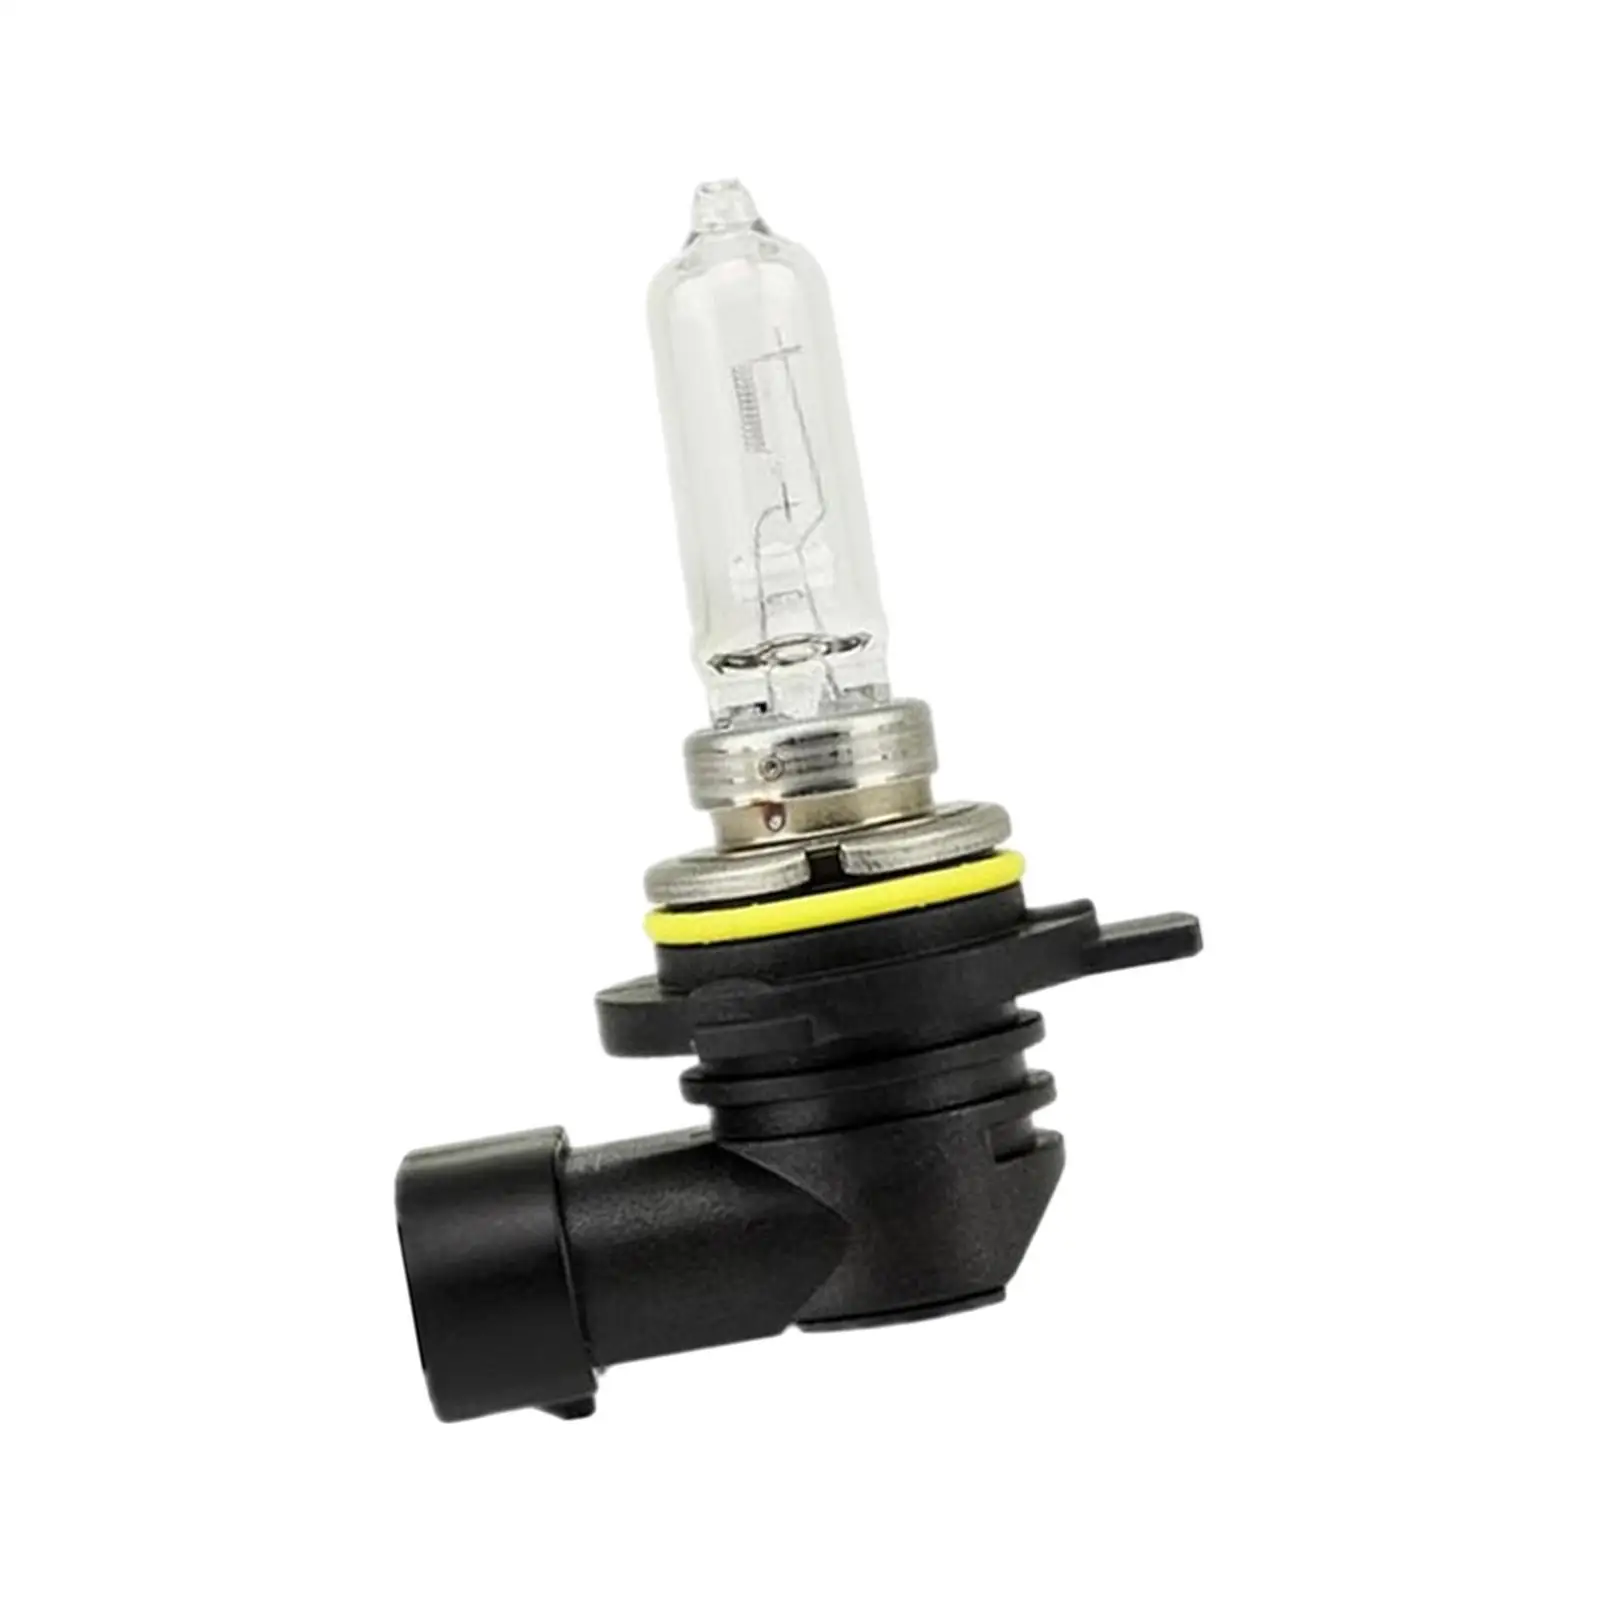 Auto Headlight Bulbs Durable Car Head Lights Bulbs Car Accessories